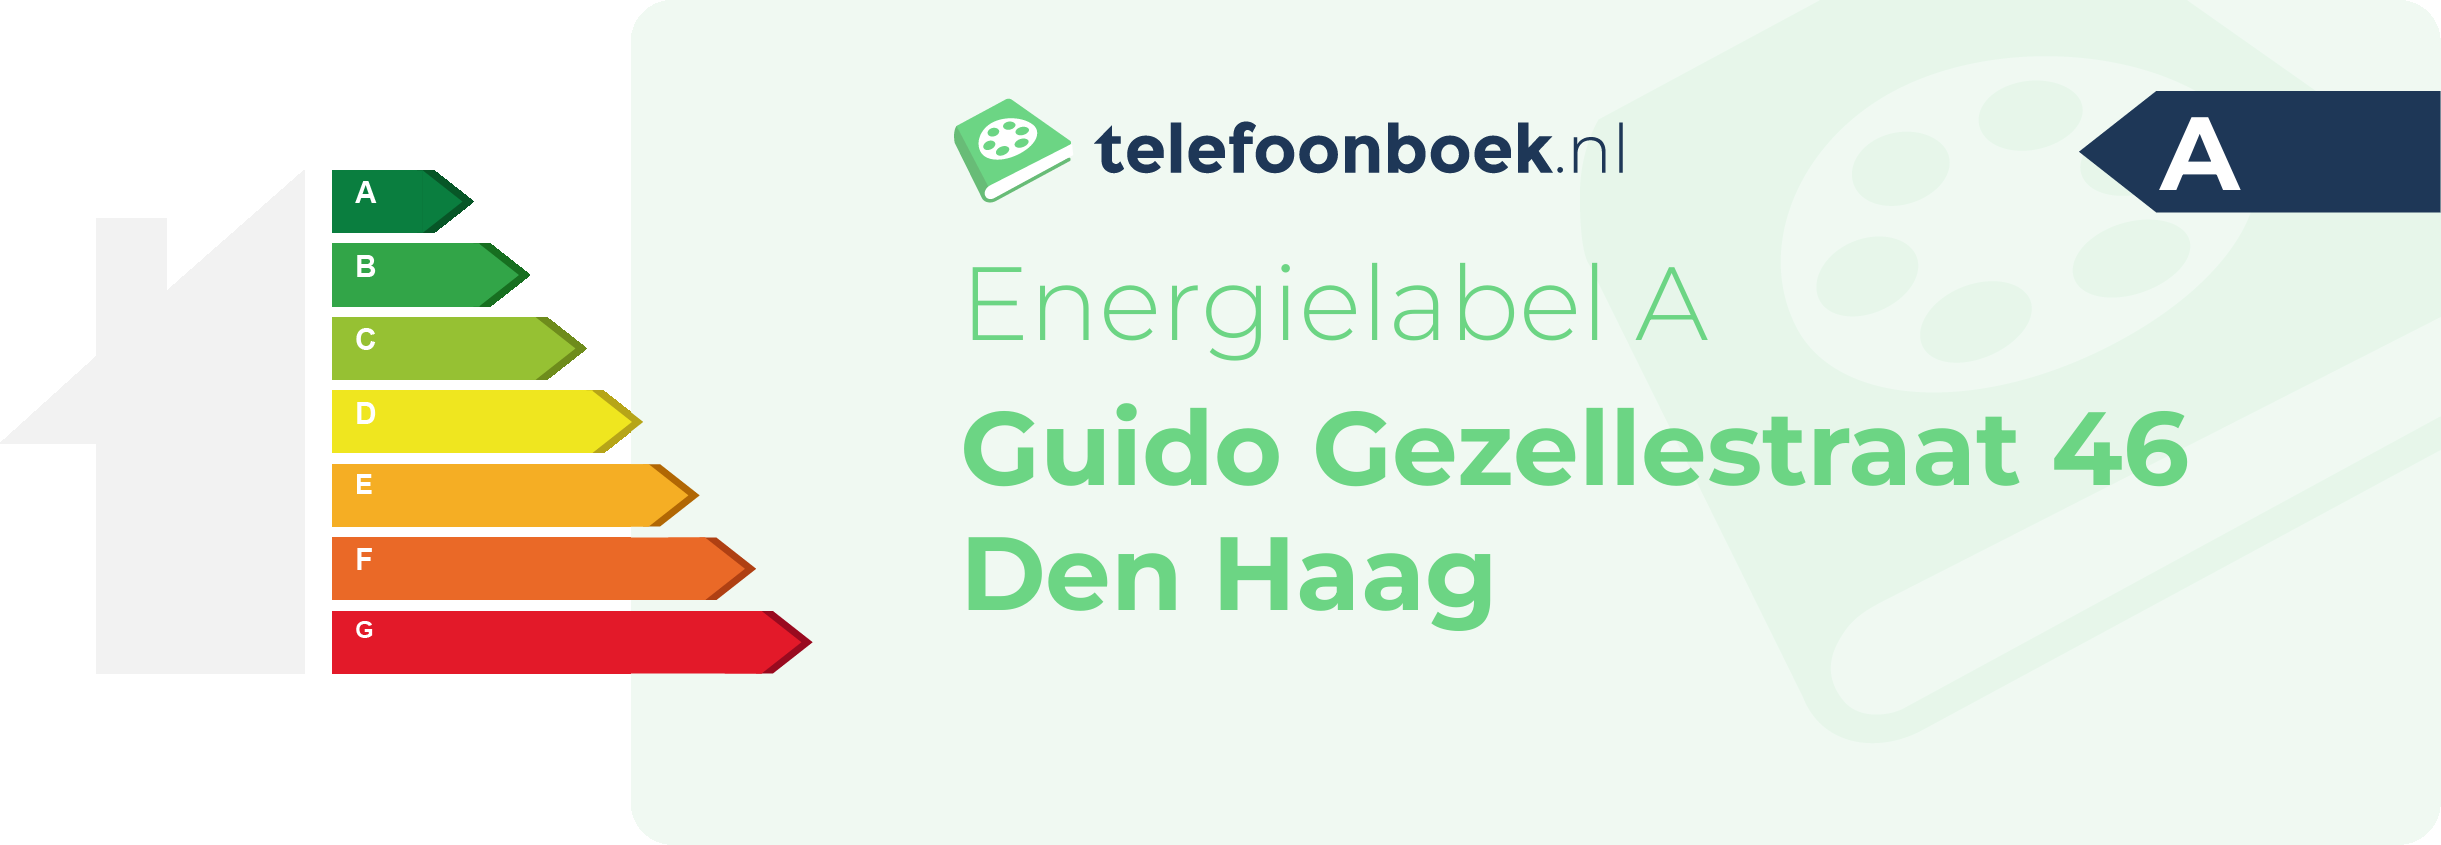 Energielabel Guido Gezellestraat 46 Den Haag